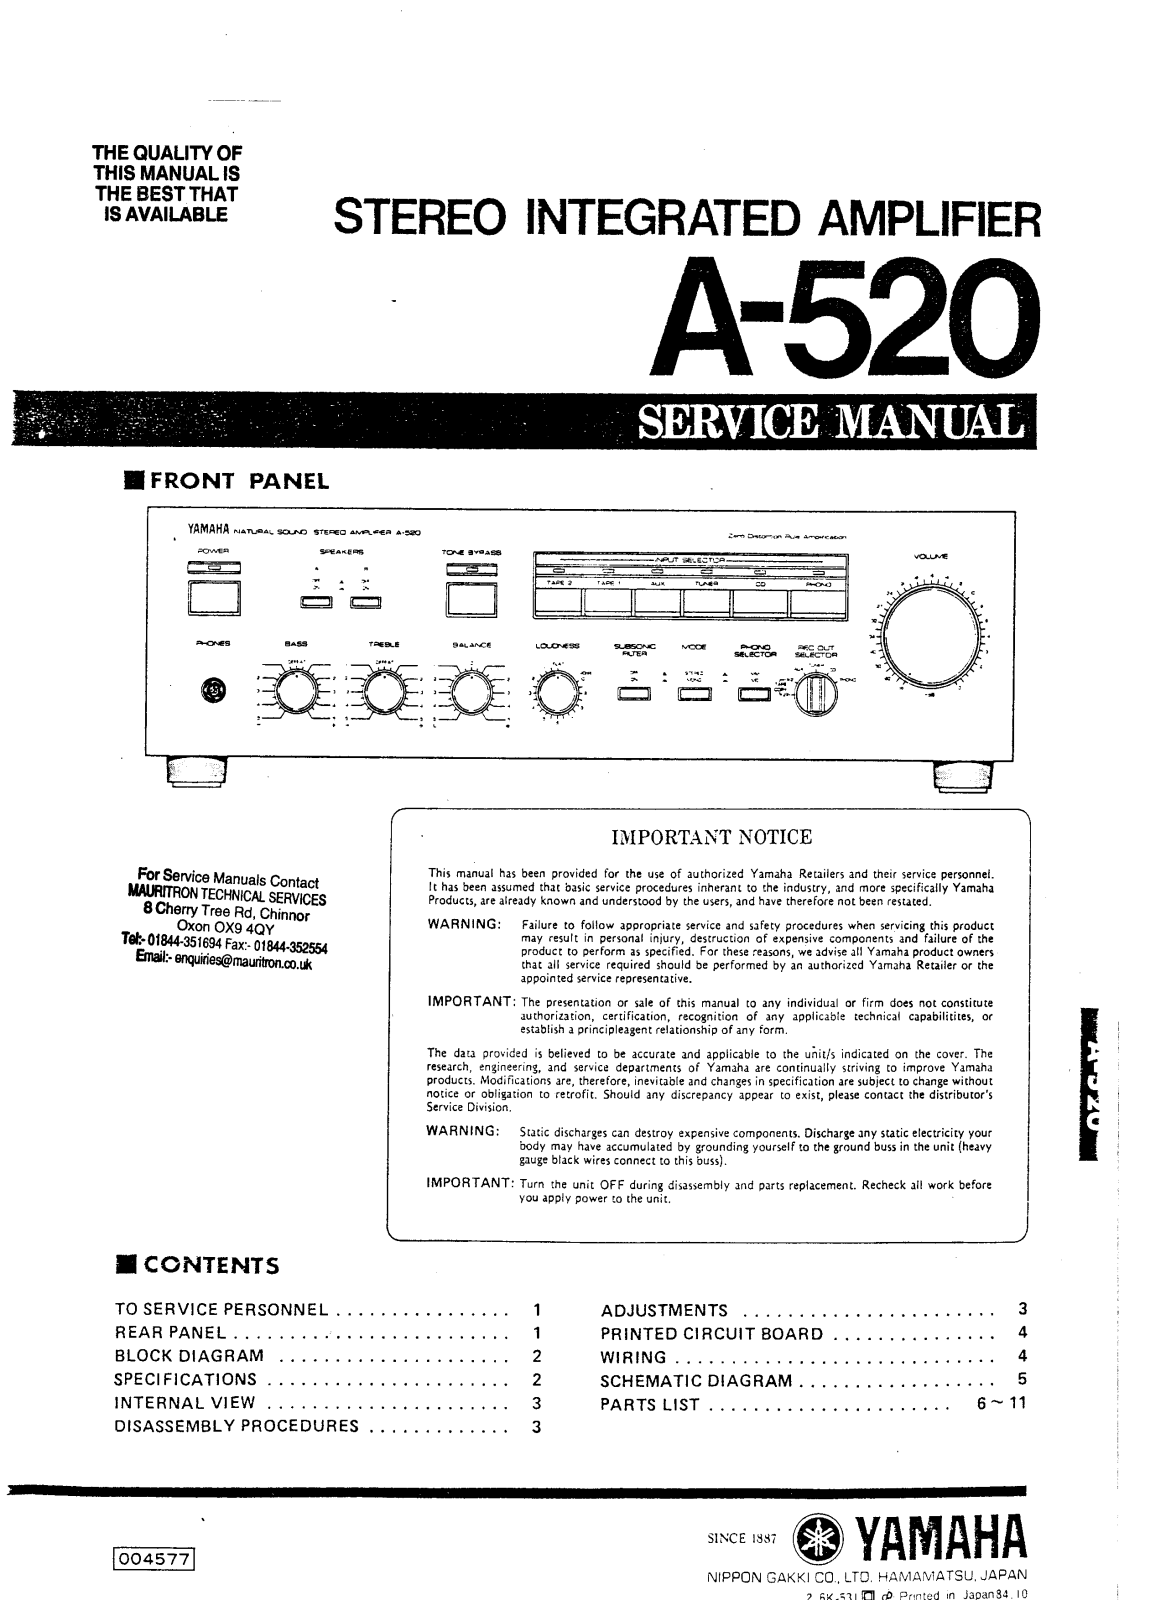 Yamaha A-520, A-520 Service manual